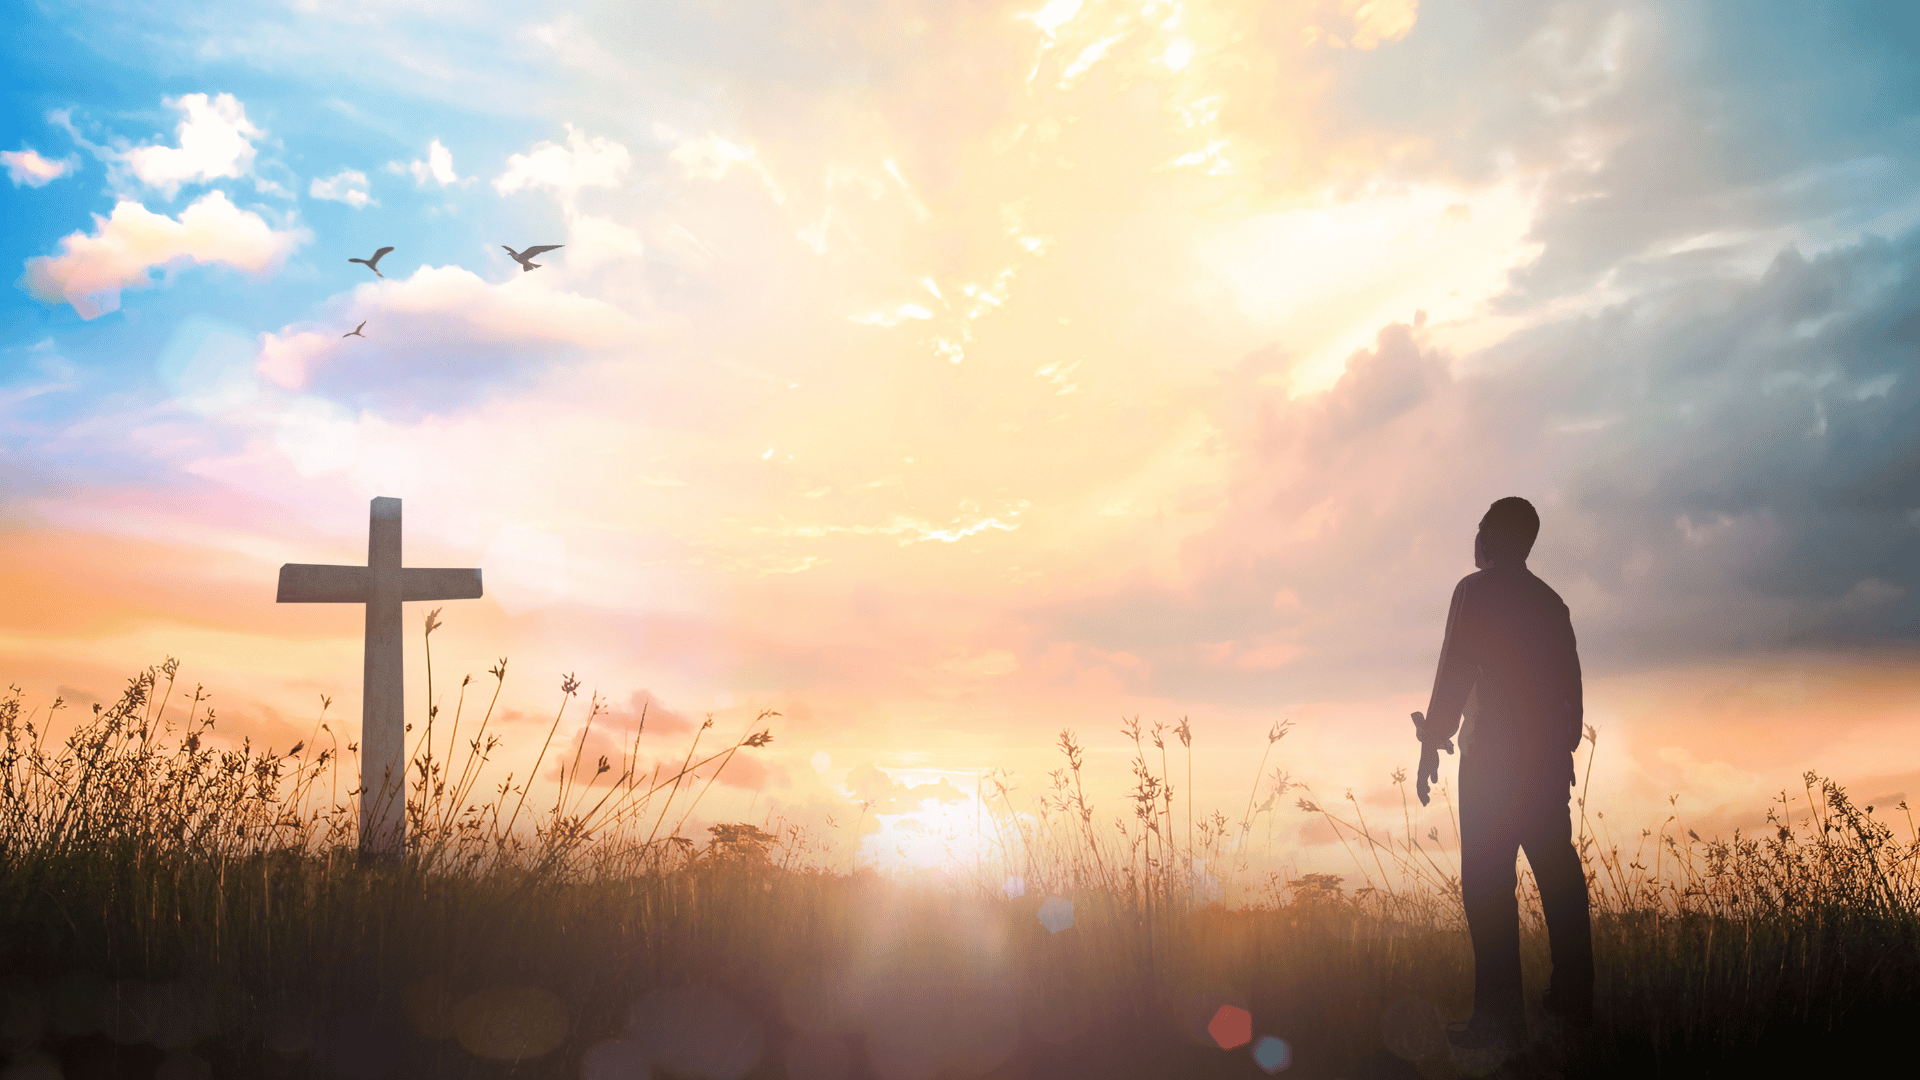 Homem olhando esperançoso para uma cruz em um campo ao pôr do sol.